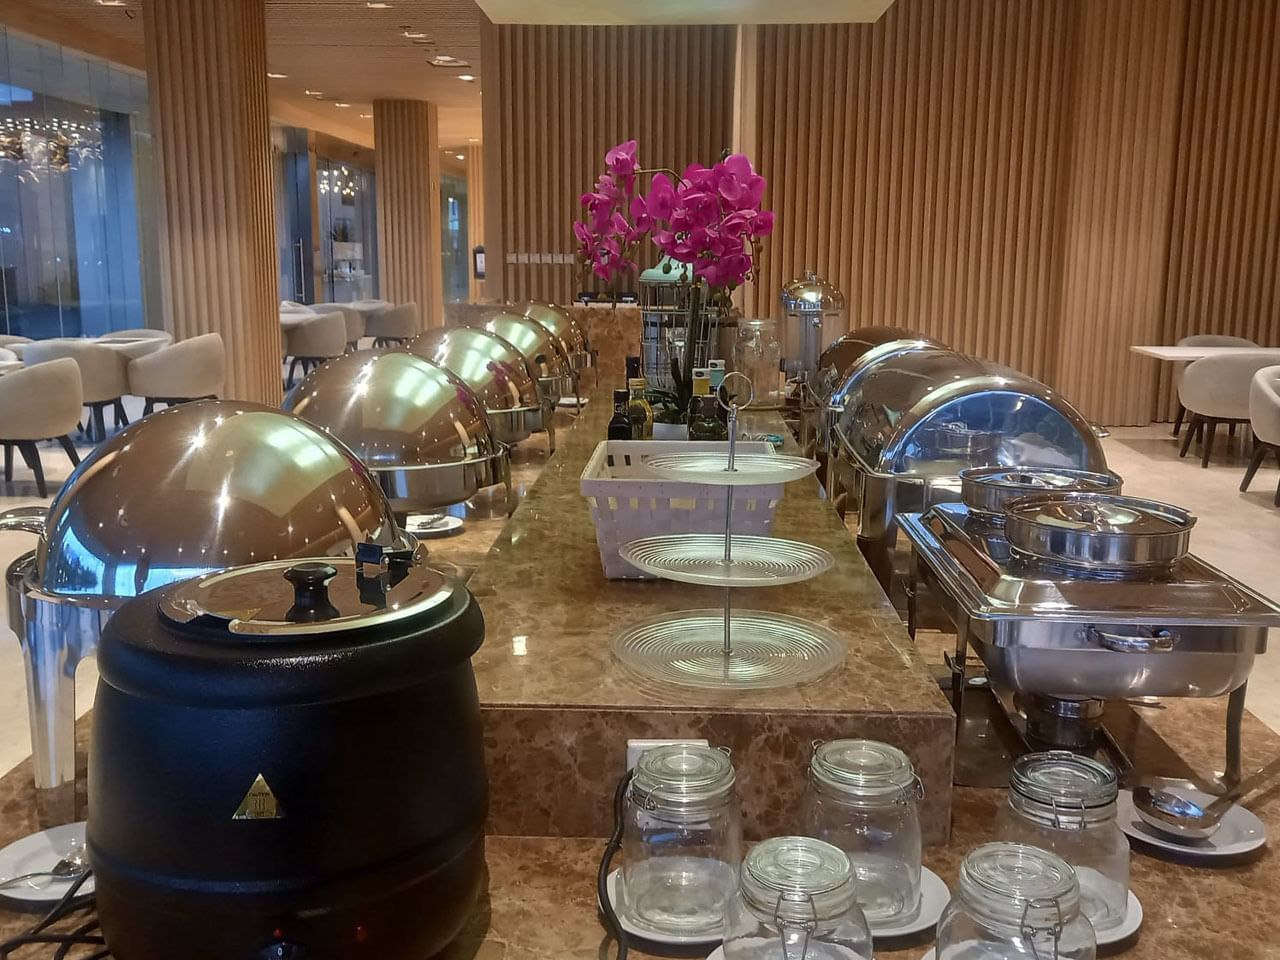 Arranged buffet area in Gastro Restaurant at LK Cikarang Hotel & Residences